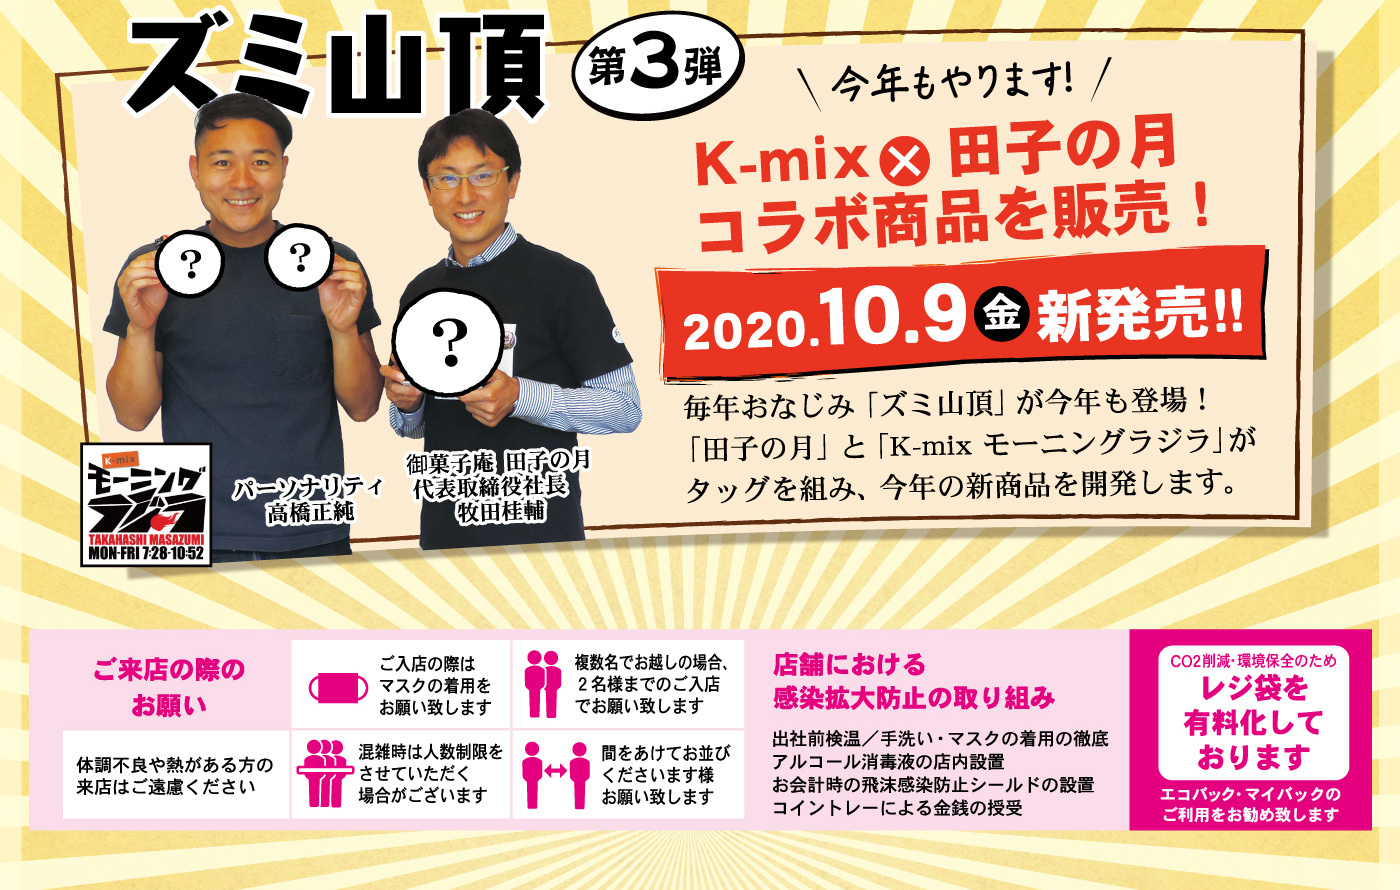 ズミ山頂第3弾今年もやります！K-mix×田子の月コラボ商品を販売！2020.10.9金新発売！！毎年おなじみ「ズミ山頂」が今年も登場！「田子の月」と「K-mix モーニングラジラ」がタッグを組み、今年の新商品を開発します。？？？K-mixモーニングラジラTAKAHASHIMASAZUMIMON-FRI7：28-10：52パーソナリティ高橋正純御菓子庵田子の月代表取締役社長牧田桂輔ご来店の際のお願い体調不良や熱がある方の来店はご遠慮くださいご入店の際はマスクの着用をお願い致します混雑時は人数制限をさせていただく場合がございます複数名でお越しの場合、2名様までのご入店でお願い致します間をあけてお並びくださいます様お願い致します店舗における感染拡大防止の取り組み出社前検温／手洗い・マスクの着用の徹底アルコール消毒液の店内設置お会計時の飛沫感染防止シールドの設置コイントレーによる金銭の授受CO2削減・環境保全のためレジ袋を有料化しておりますエコバック・マイバックのご利用をお勧め致します